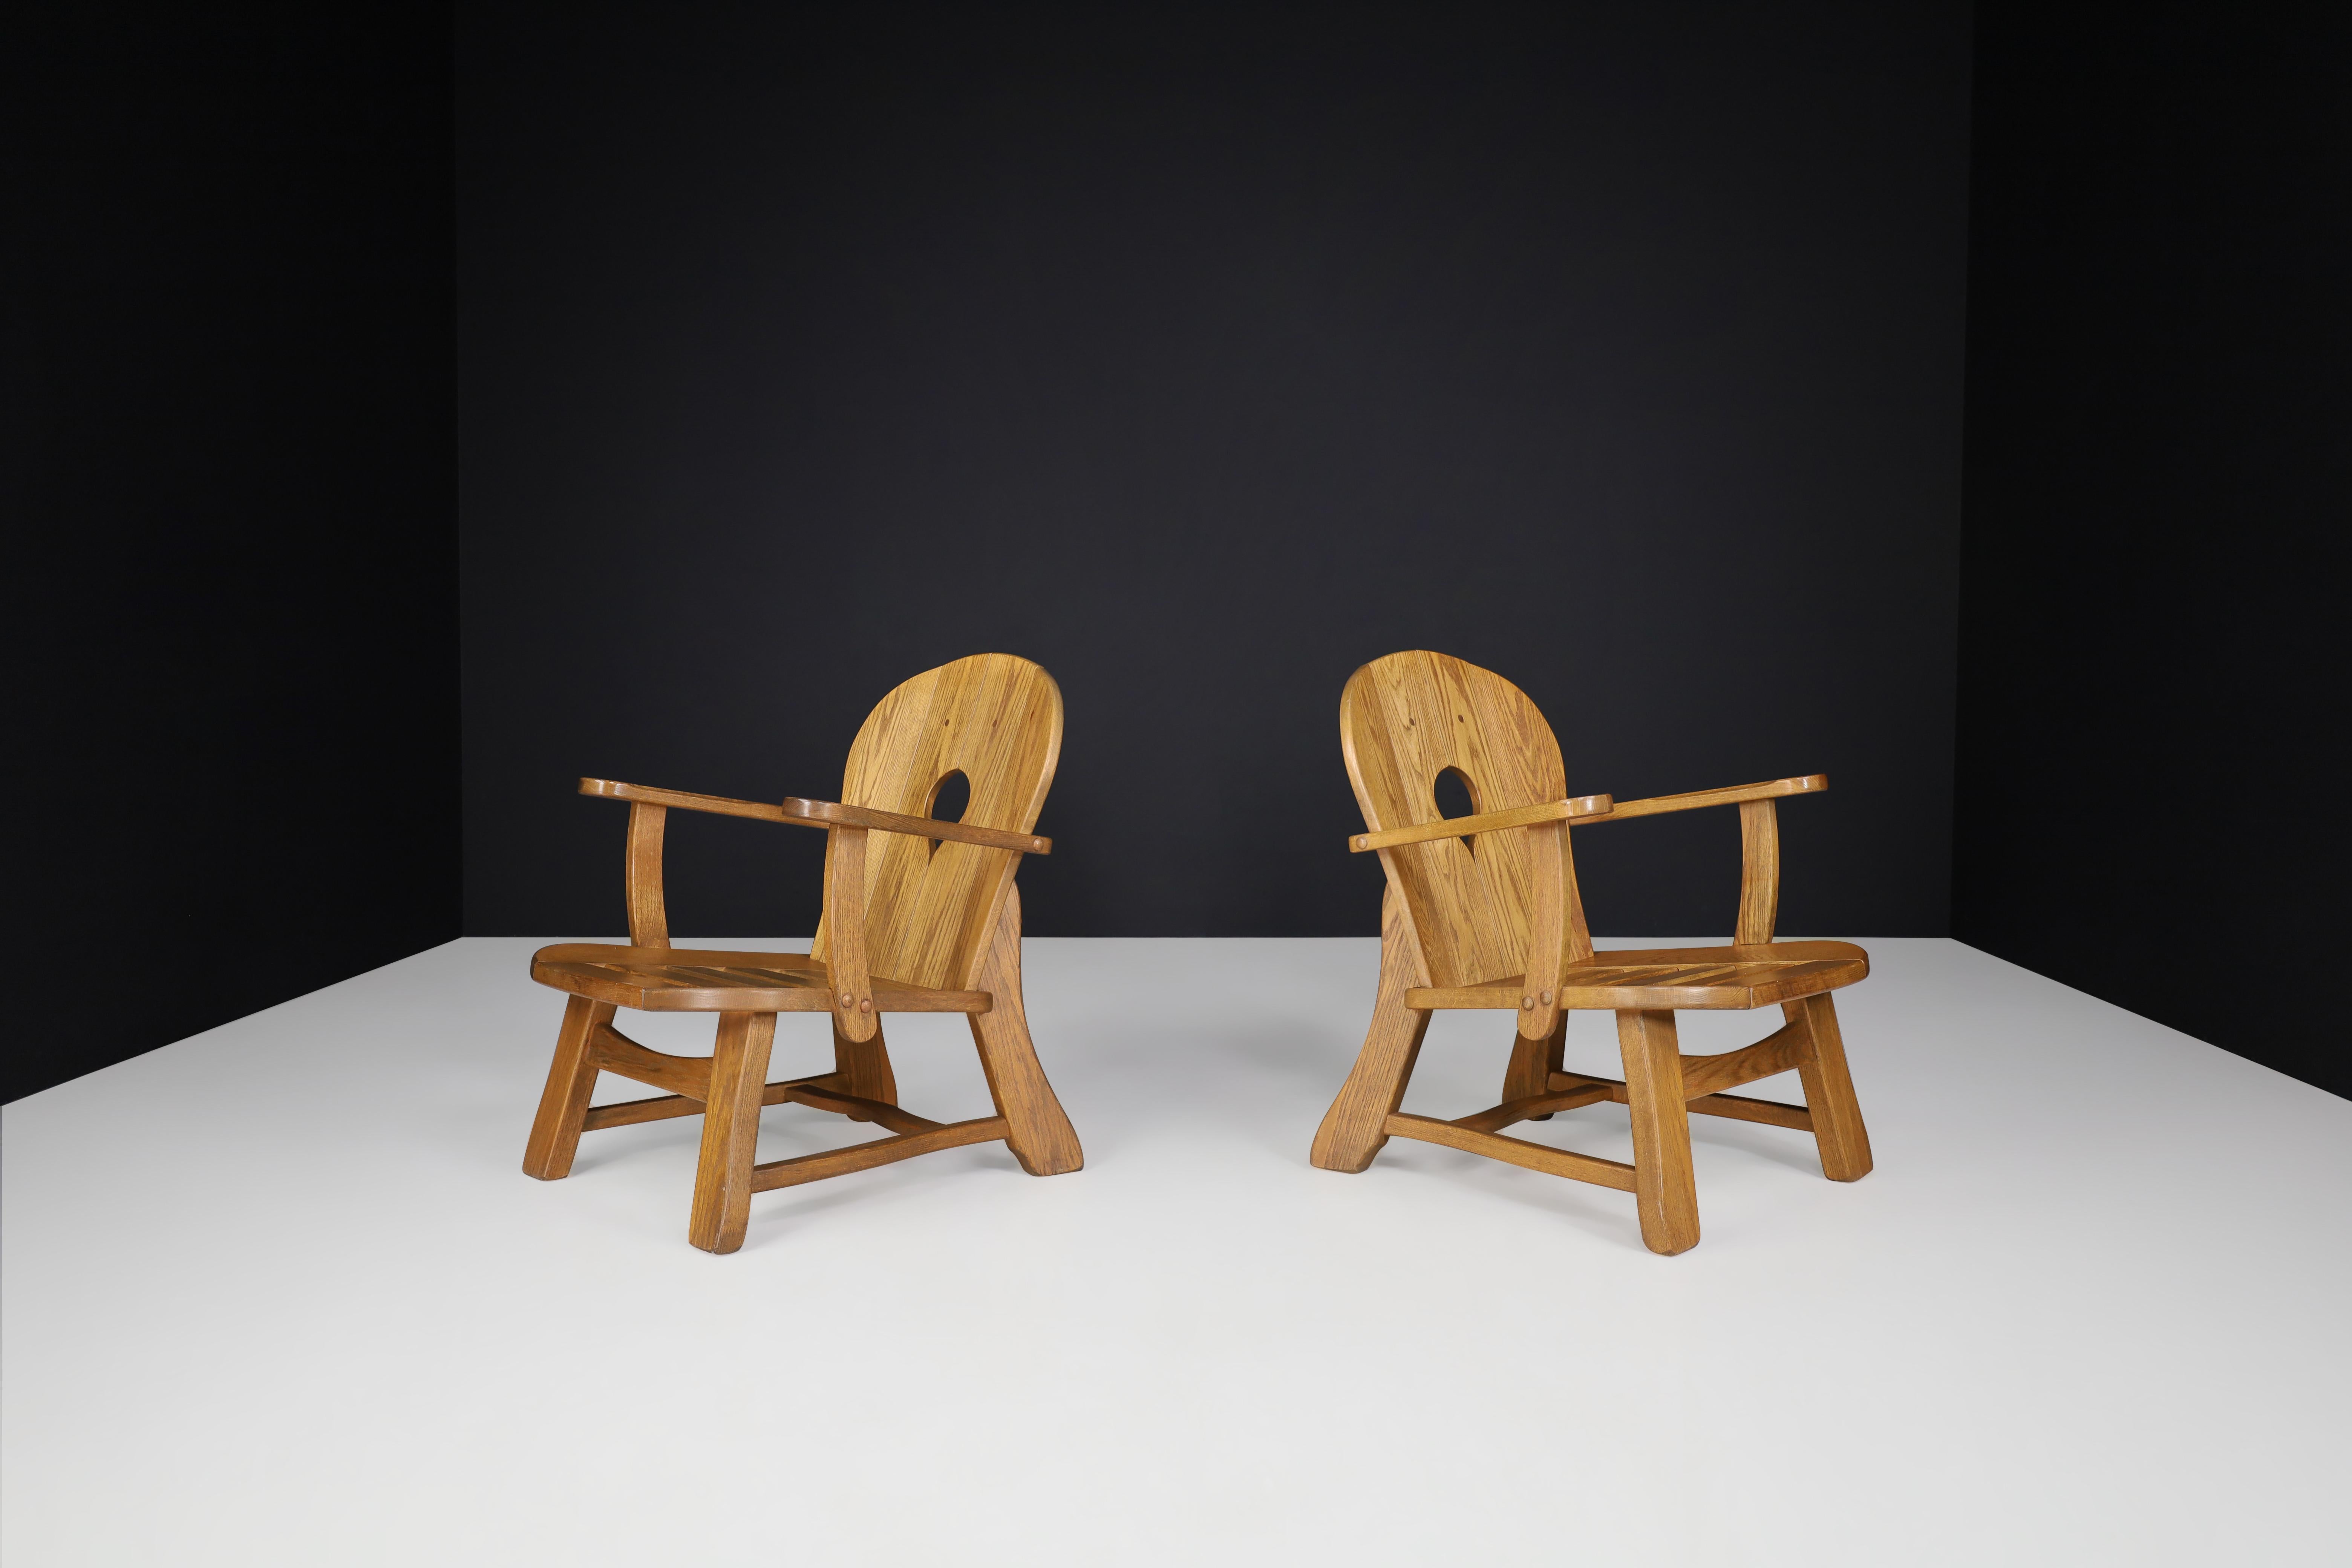 Ensemble de deux chaises longues sculpturales en chêne, France, années 1960.

Ensemble de deux fauteuils sculpturaux, ces chaises sont fabriquées en chêne français et sculptées à la main en France dans les années 1960. Le travail artisanal est